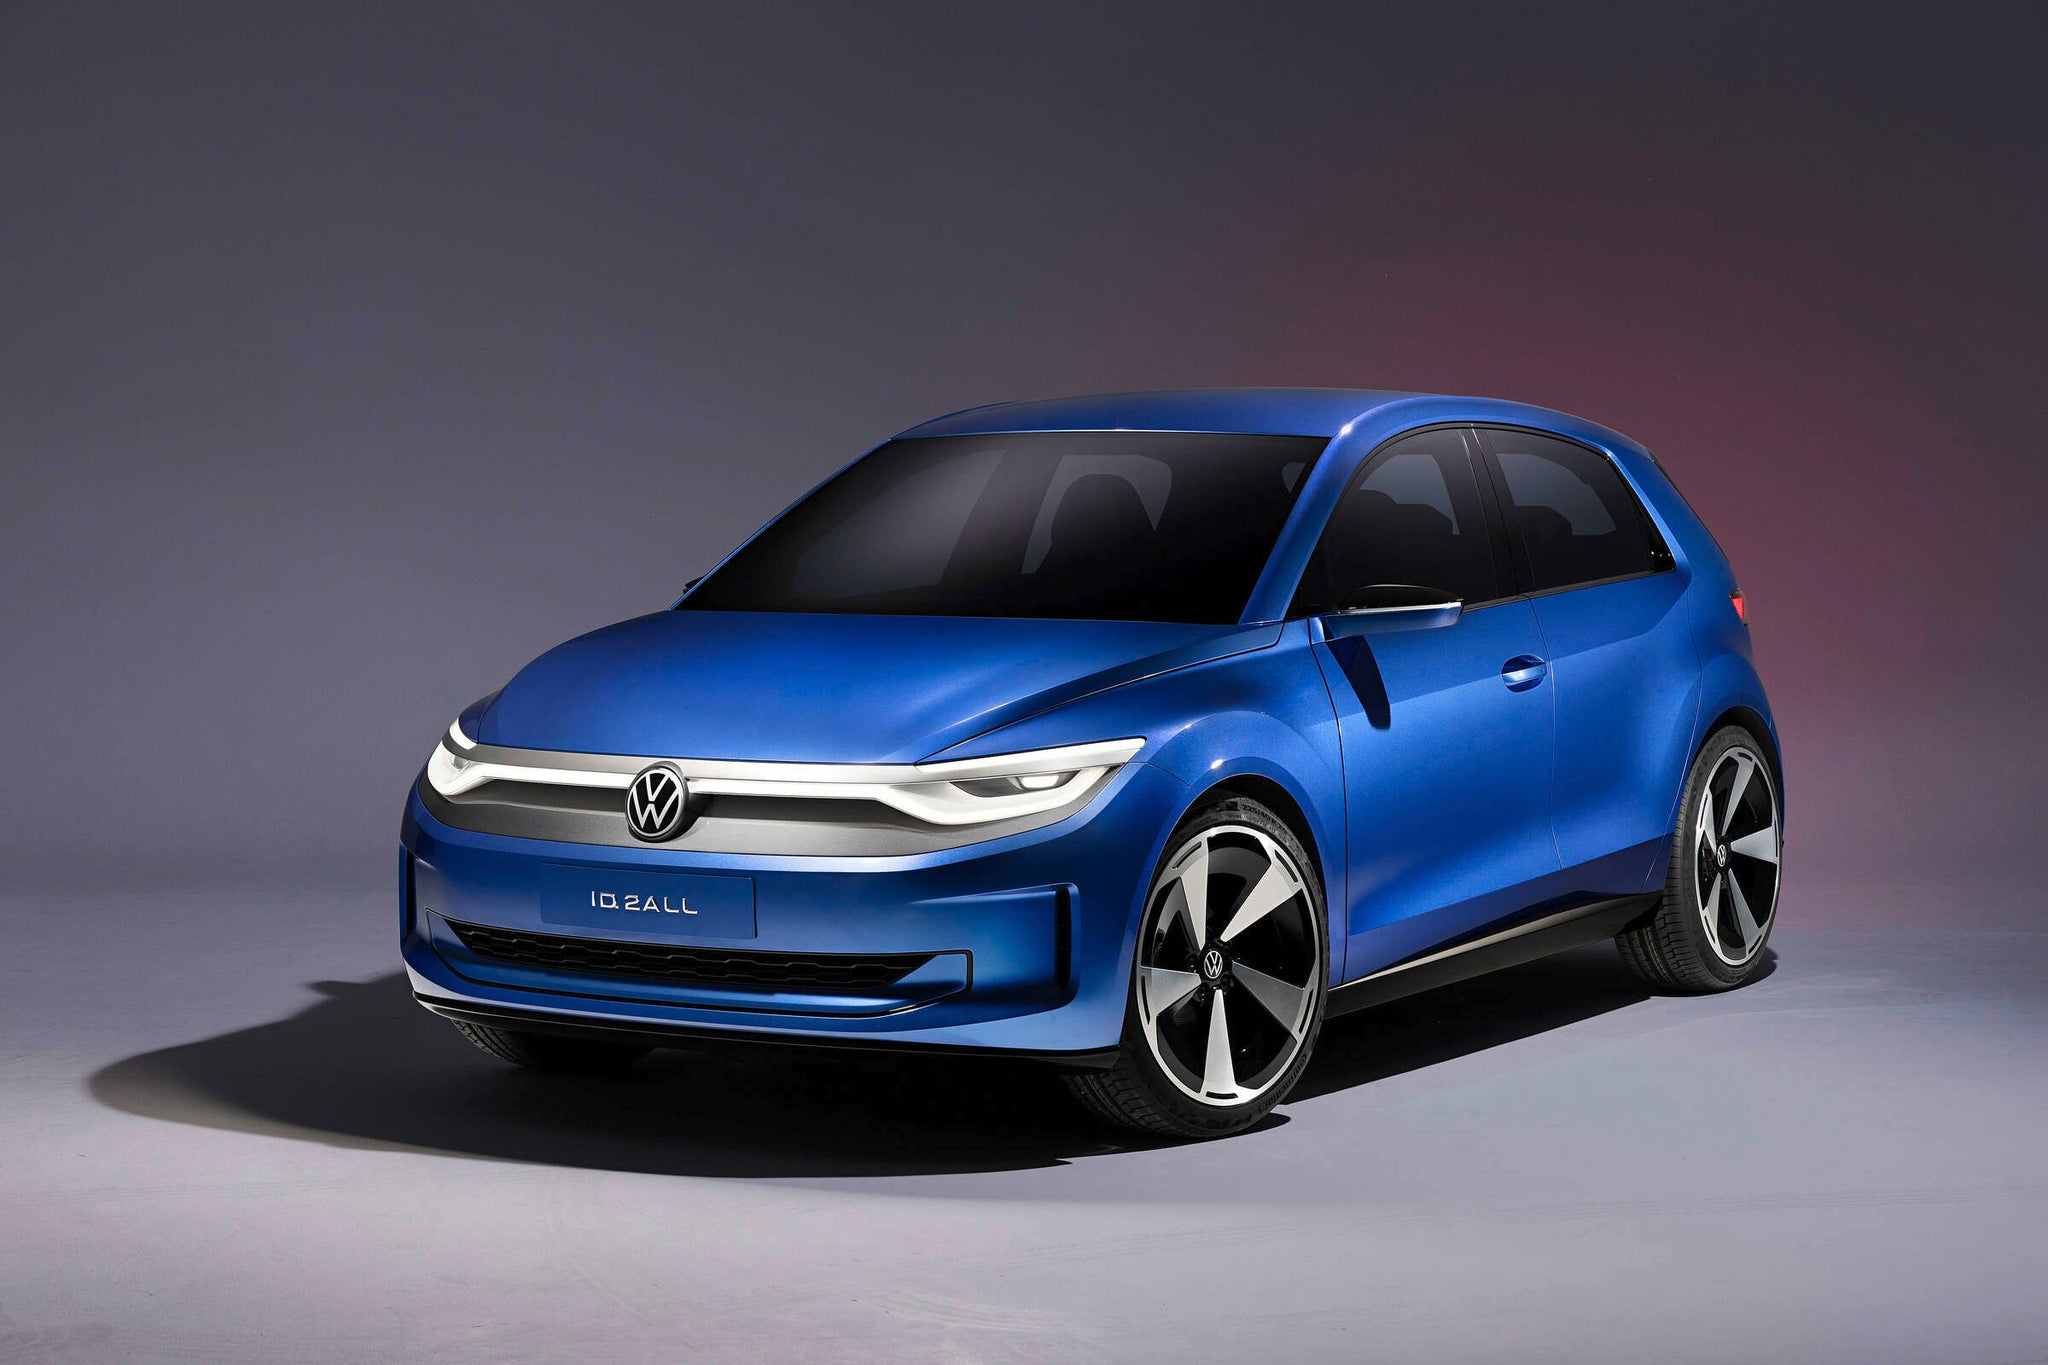 Weltpremiere der Studie Volkswagen ID.2all. Ein Elektro-Kleinwagen für 25.000 Euro!